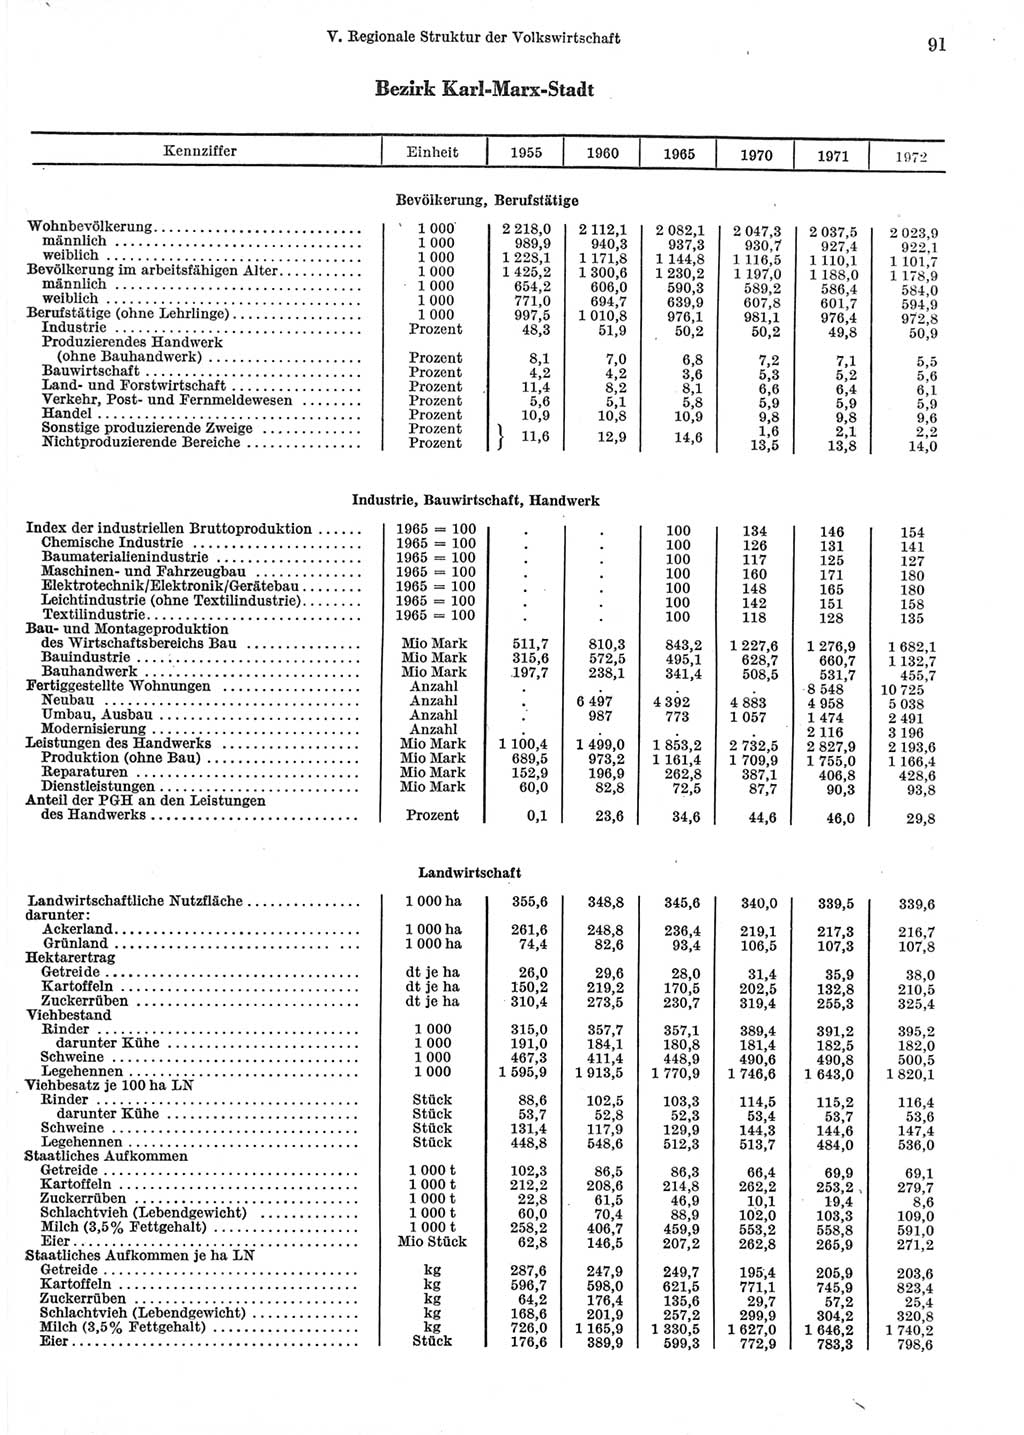 Statistisches Jahrbuch der Deutschen Demokratischen Republik (DDR) 1973, Seite 91 (Stat. Jb. DDR 1973, S. 91)